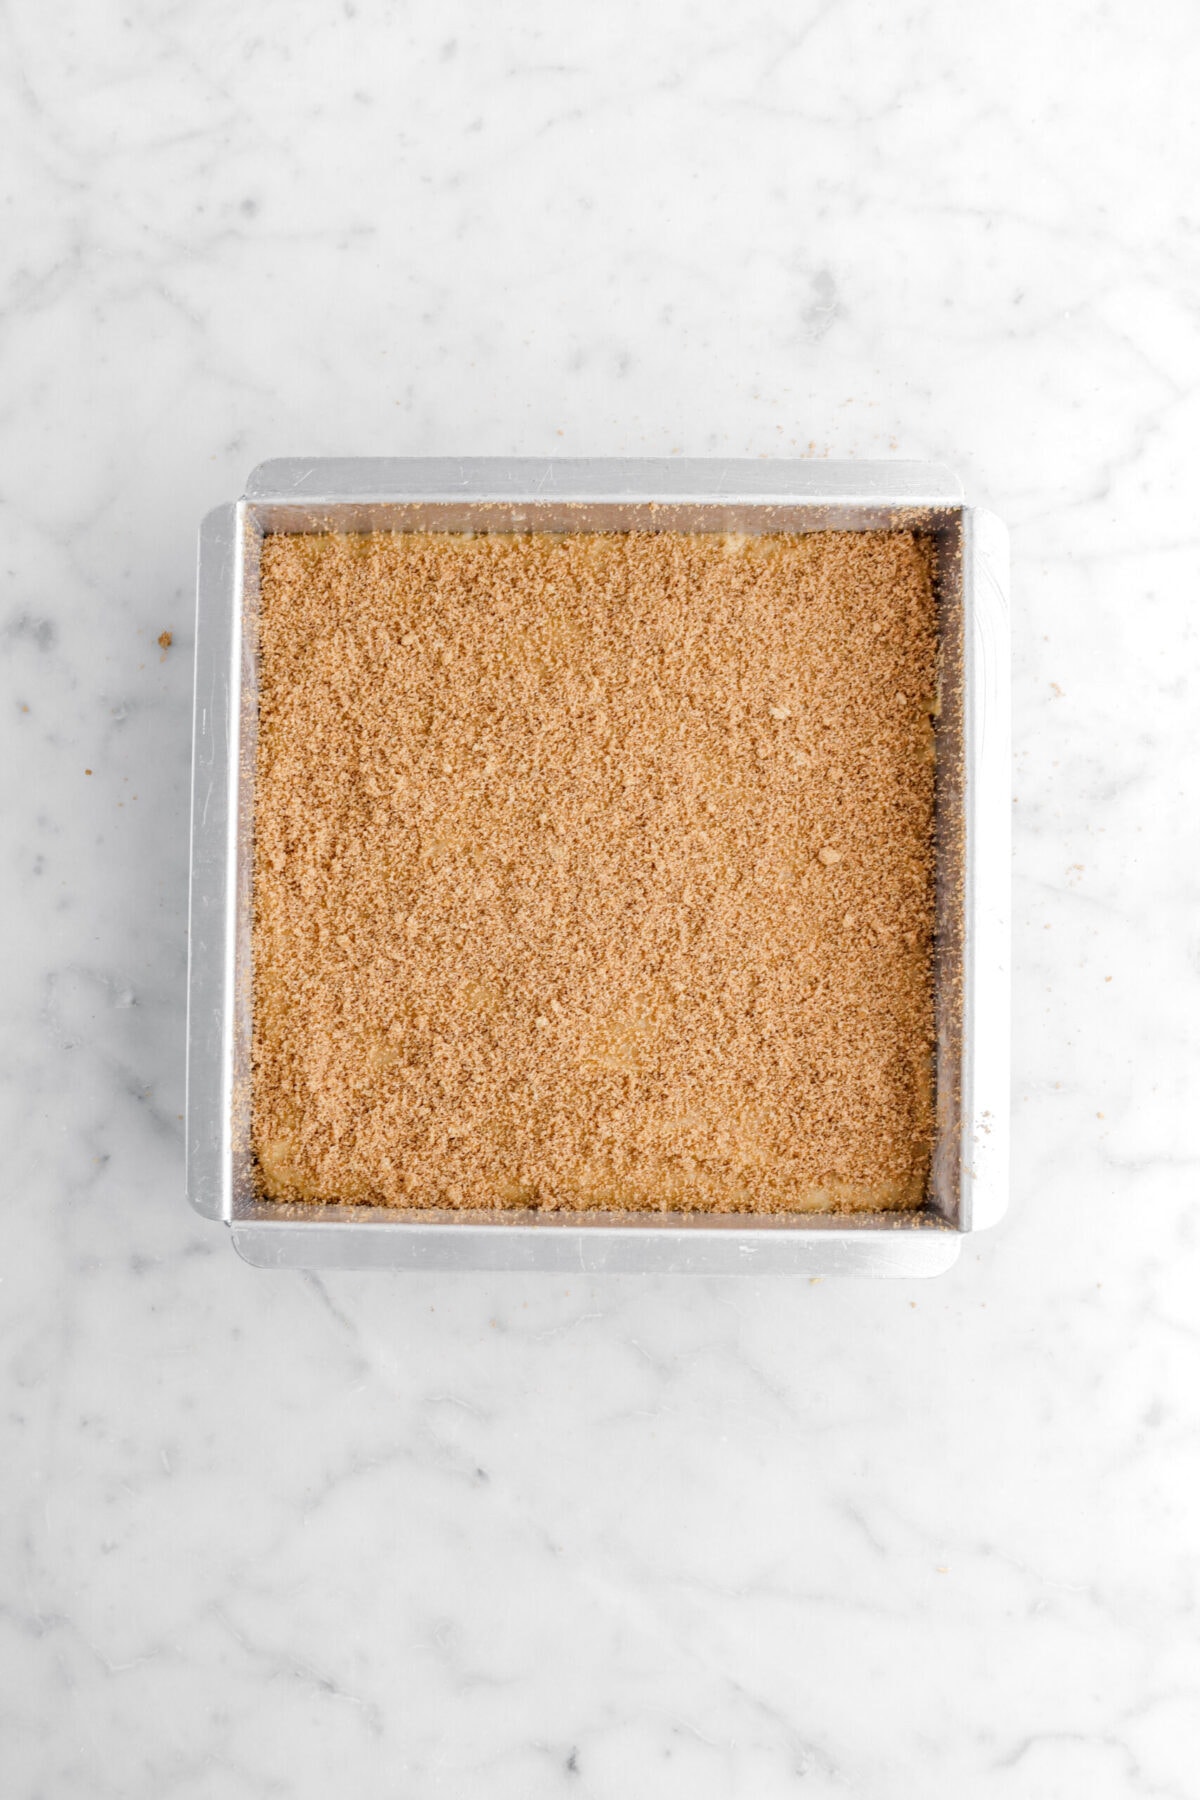 blondie batter in square pan with cinnamon sugar on top.